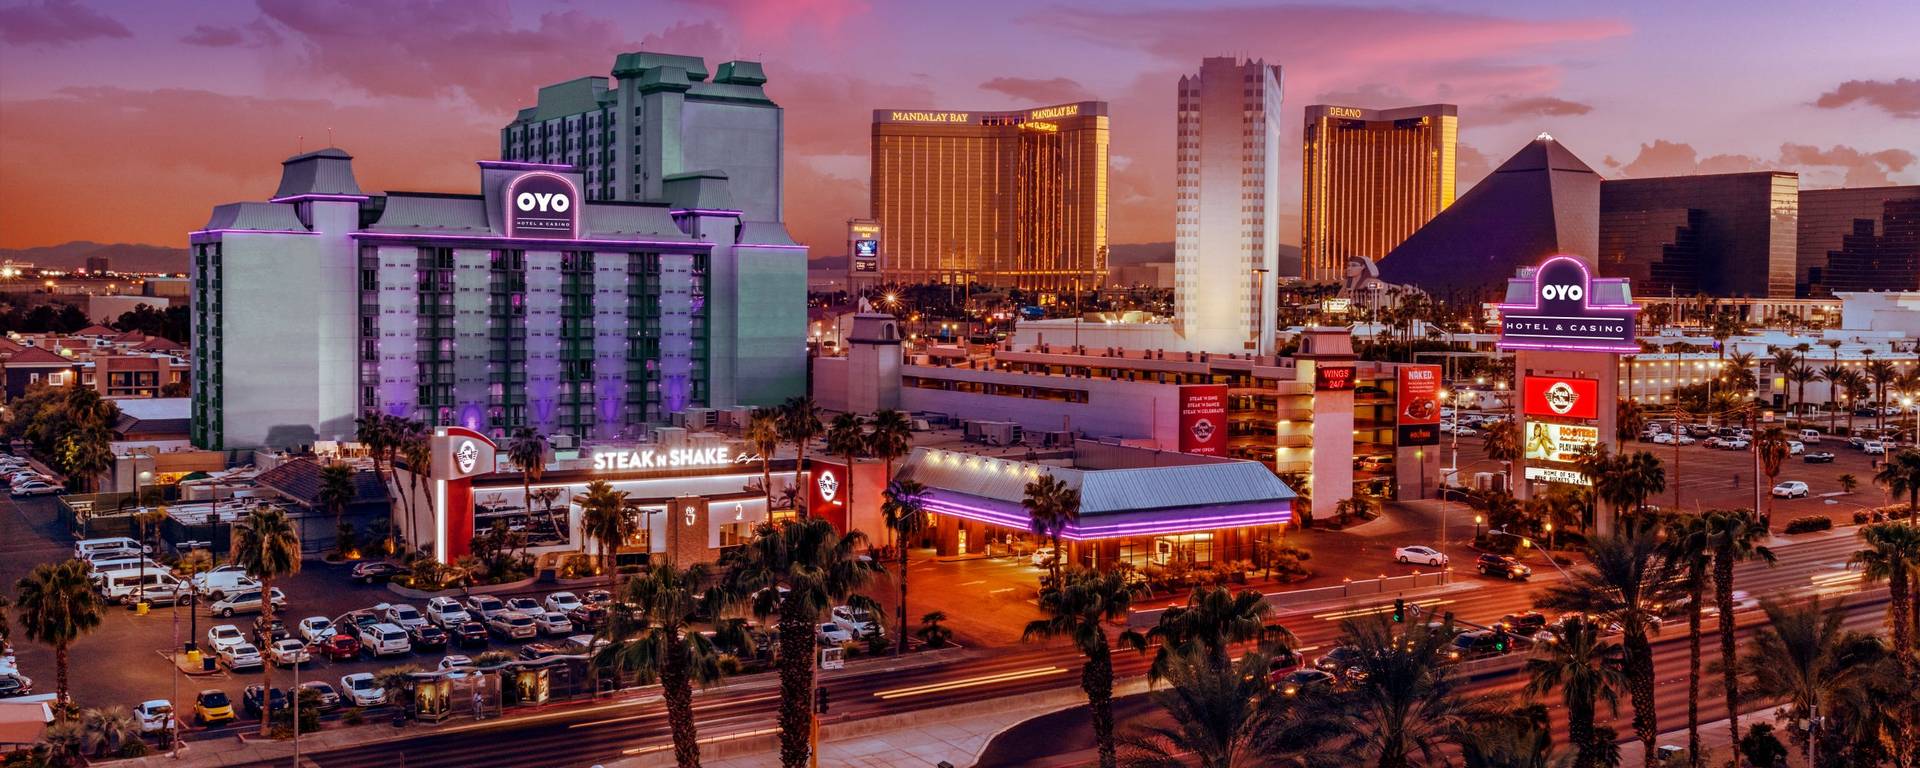 OYO Hotel Las Vegas Deals Promo Codes & Discounts